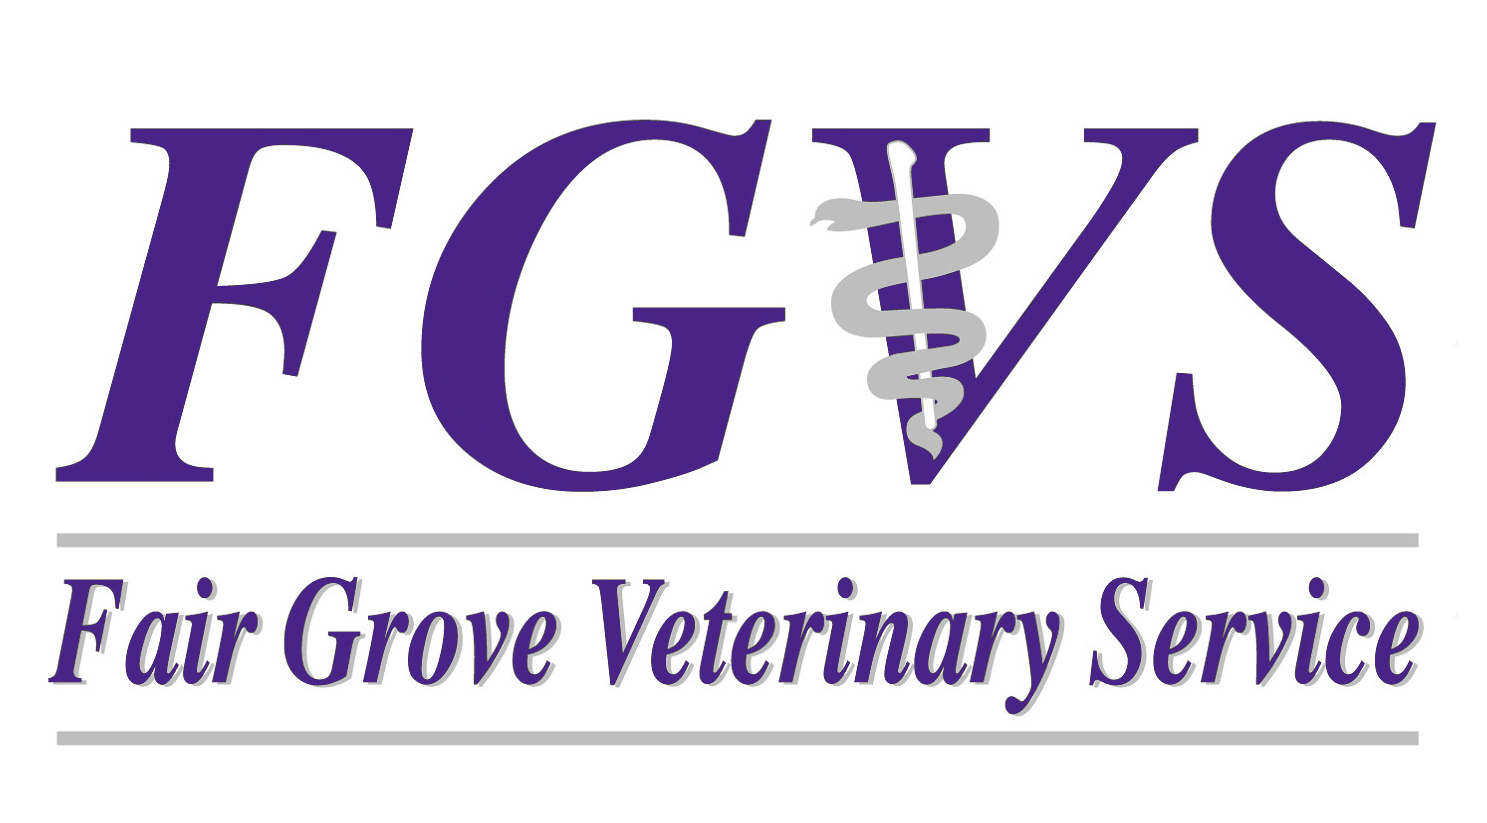 Fair Grove Veterinary Service